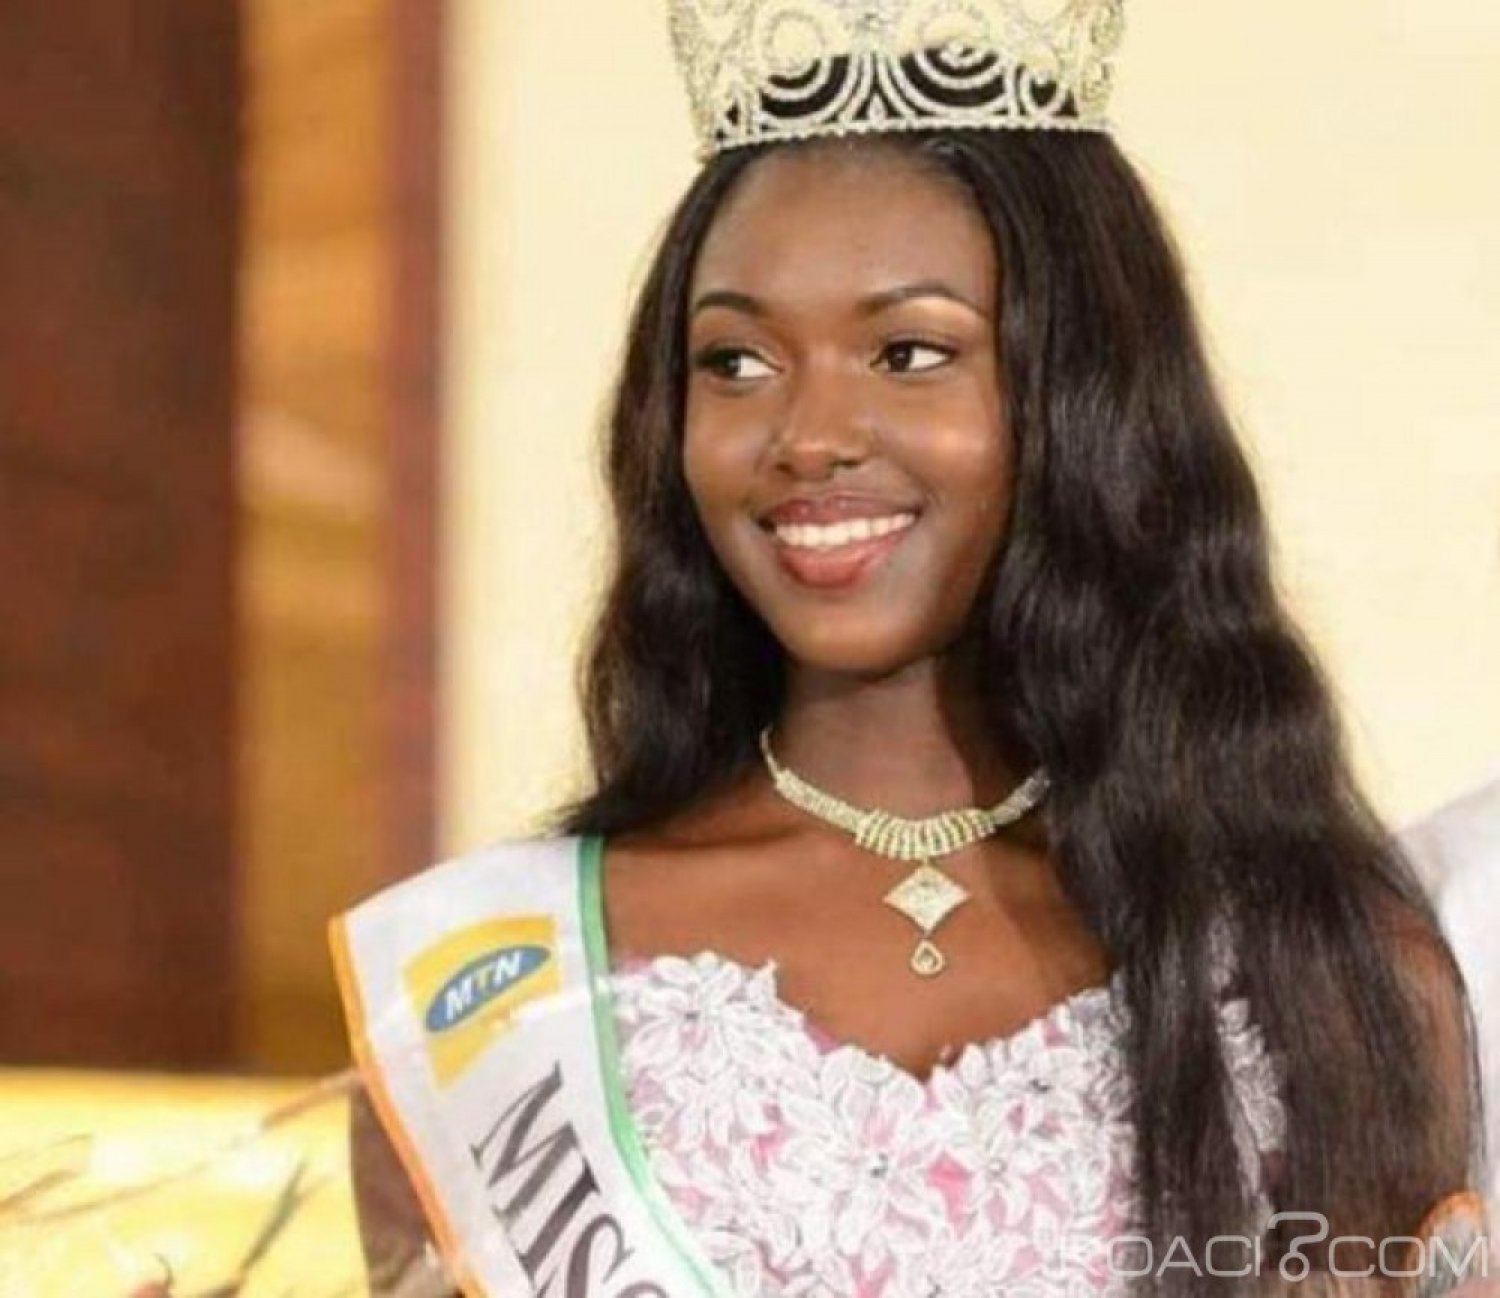 Côte d'Ivoire : Polémique sur la nationalité de la Miss 2019, Tara Gueye est ivoirienne de mère